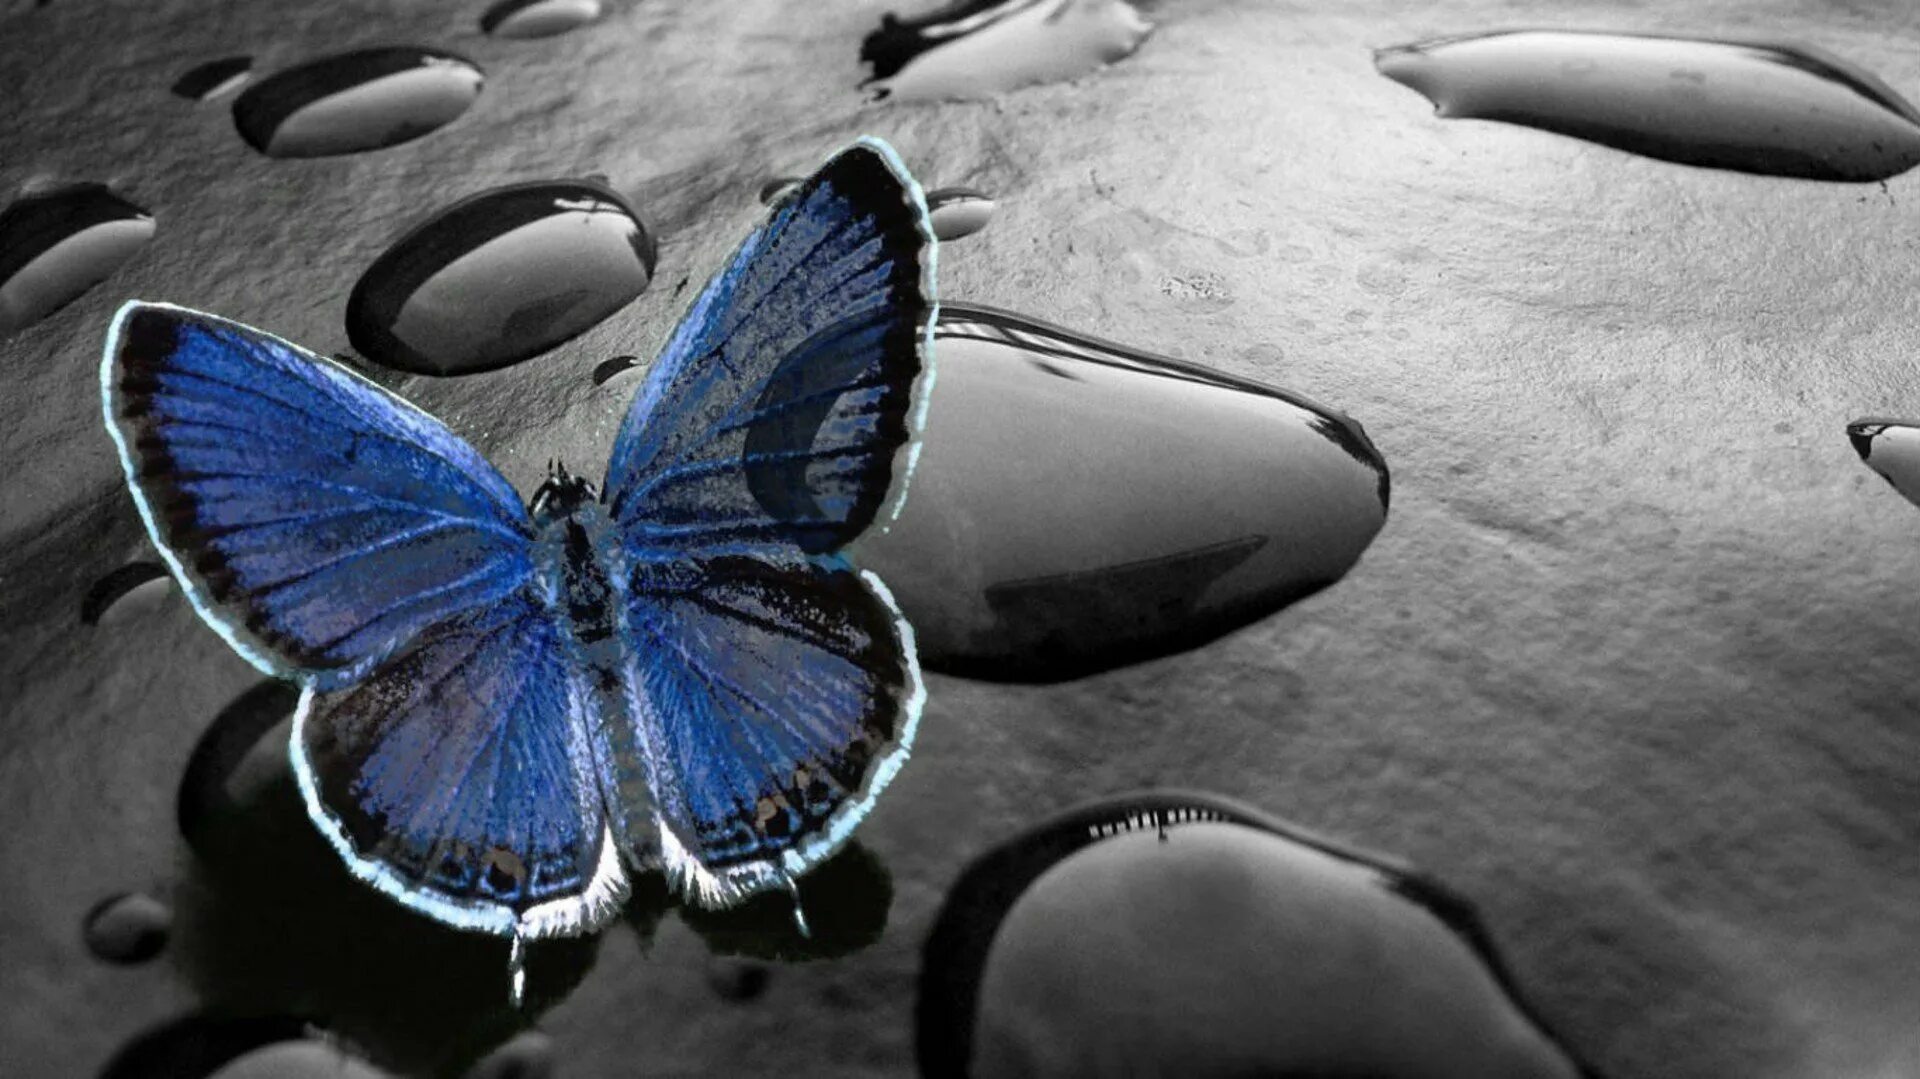 Картинку на экран телефона красивые обои. Картинки на рабочий стол бабочки. Заставка на телефон бабочки. Синяя бабочка. Необычные обои.